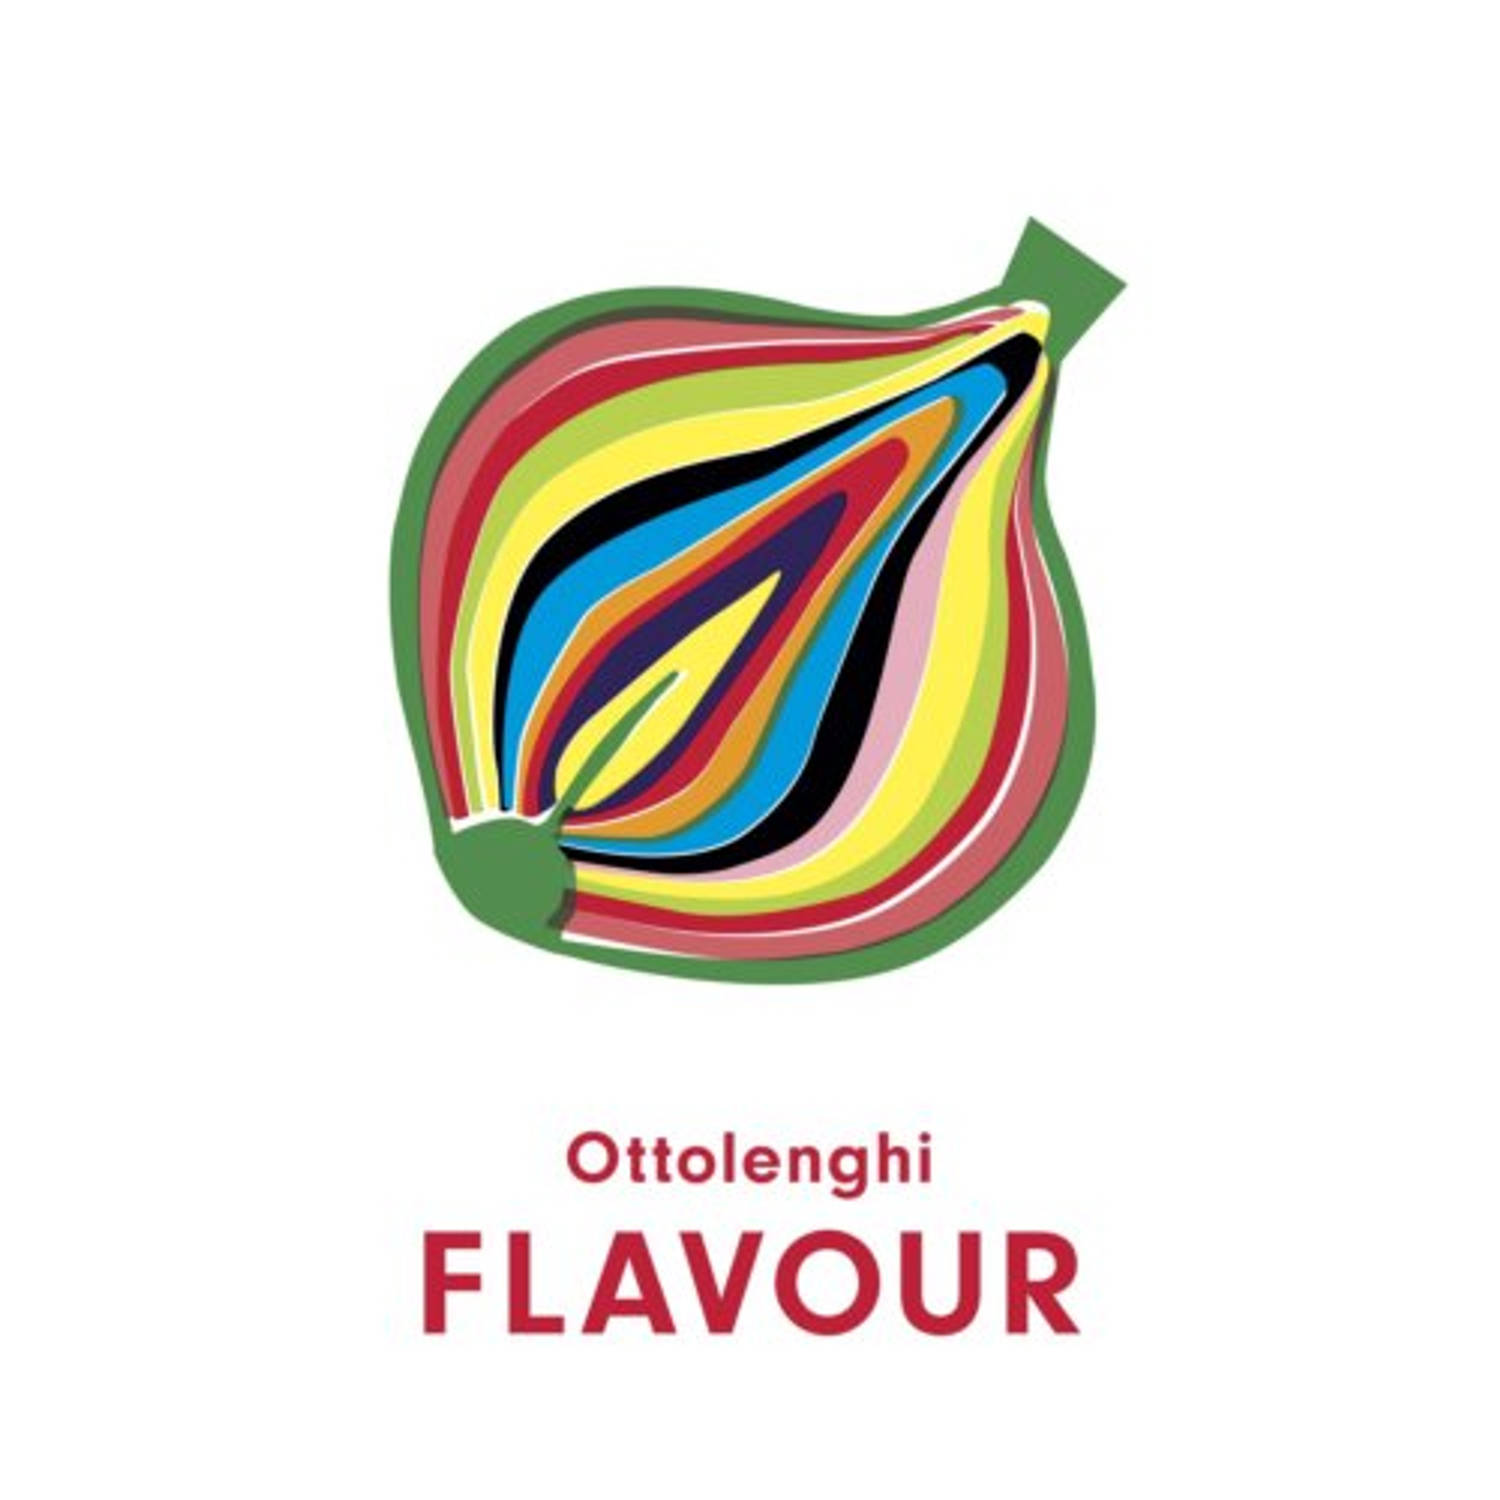 Flavour